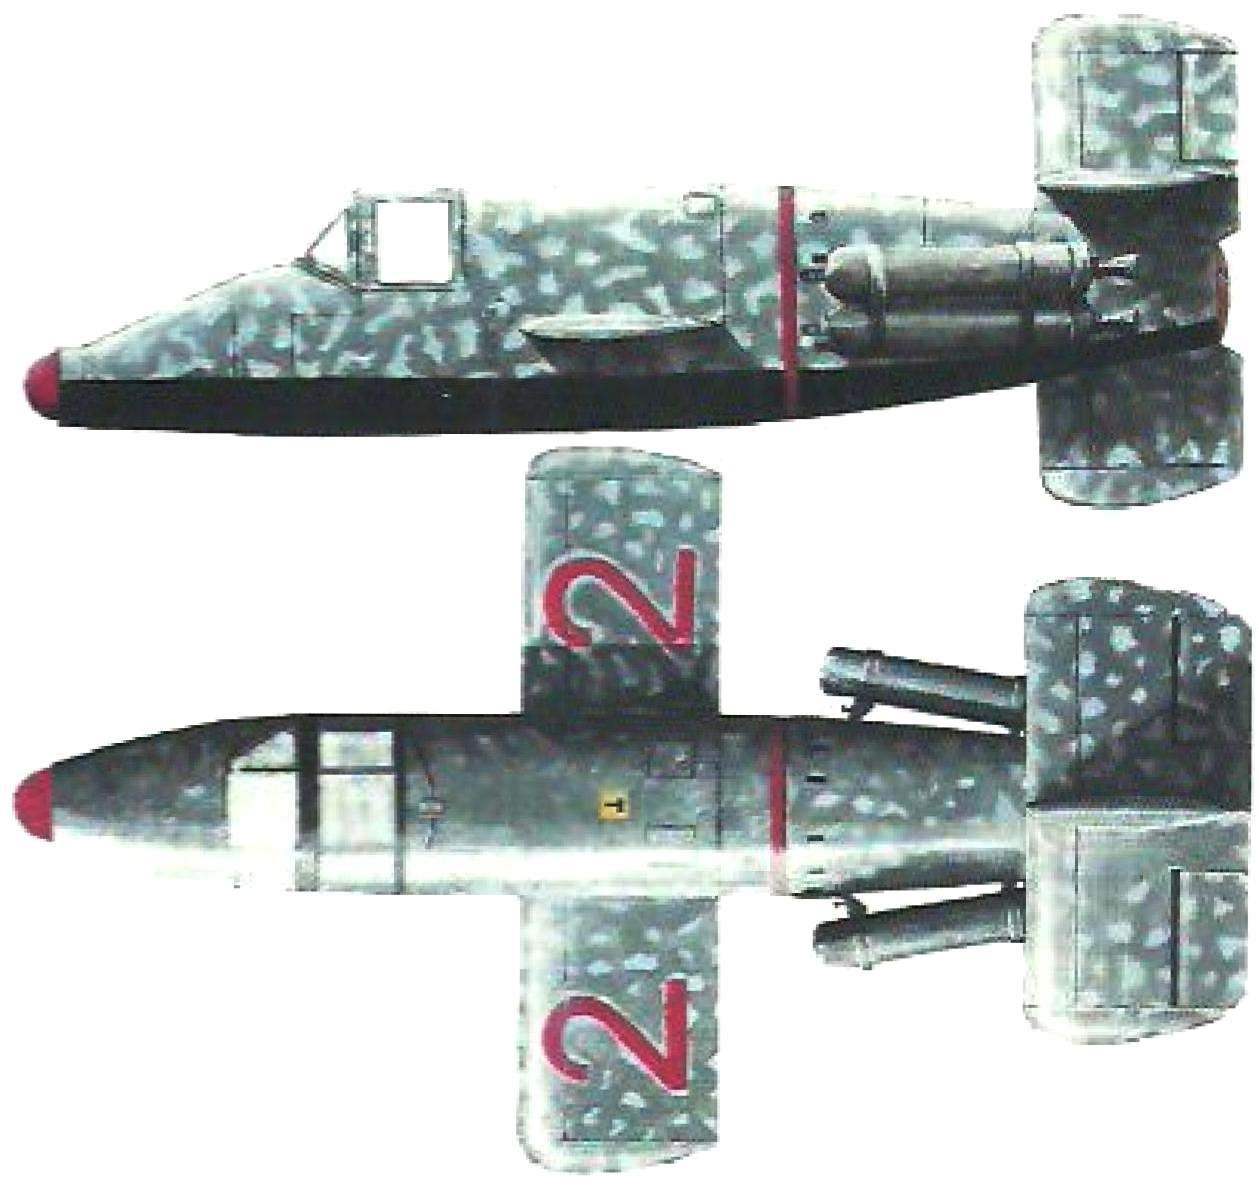 Прототип М-22 имел тёмно-серую окраску со светло-серыми пятнами неправильной формы по всему фону. Нижние поверхности были чёрными Бортовой номер 2-2 был красным